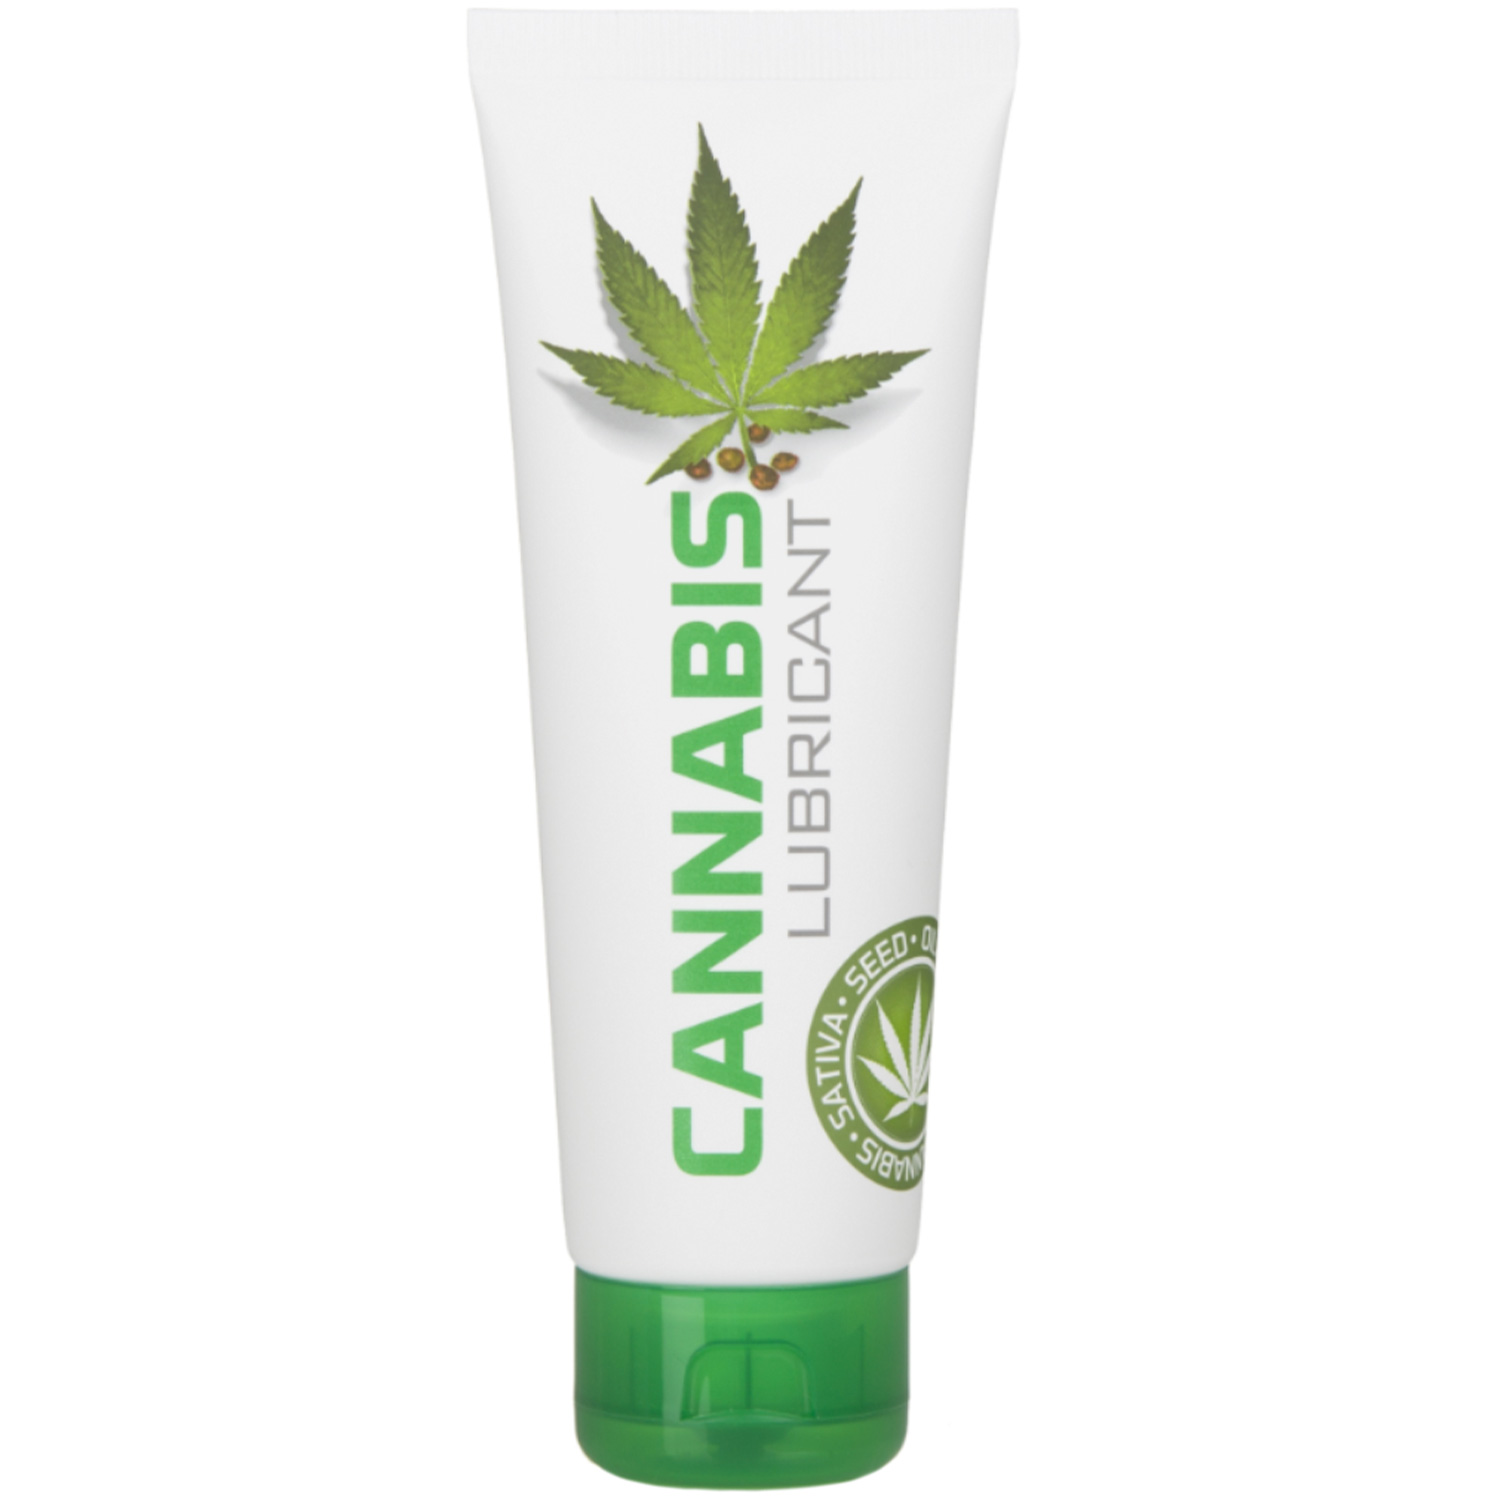 Cannabis Vattenbaserat Glidmedel 125 ml - Klar